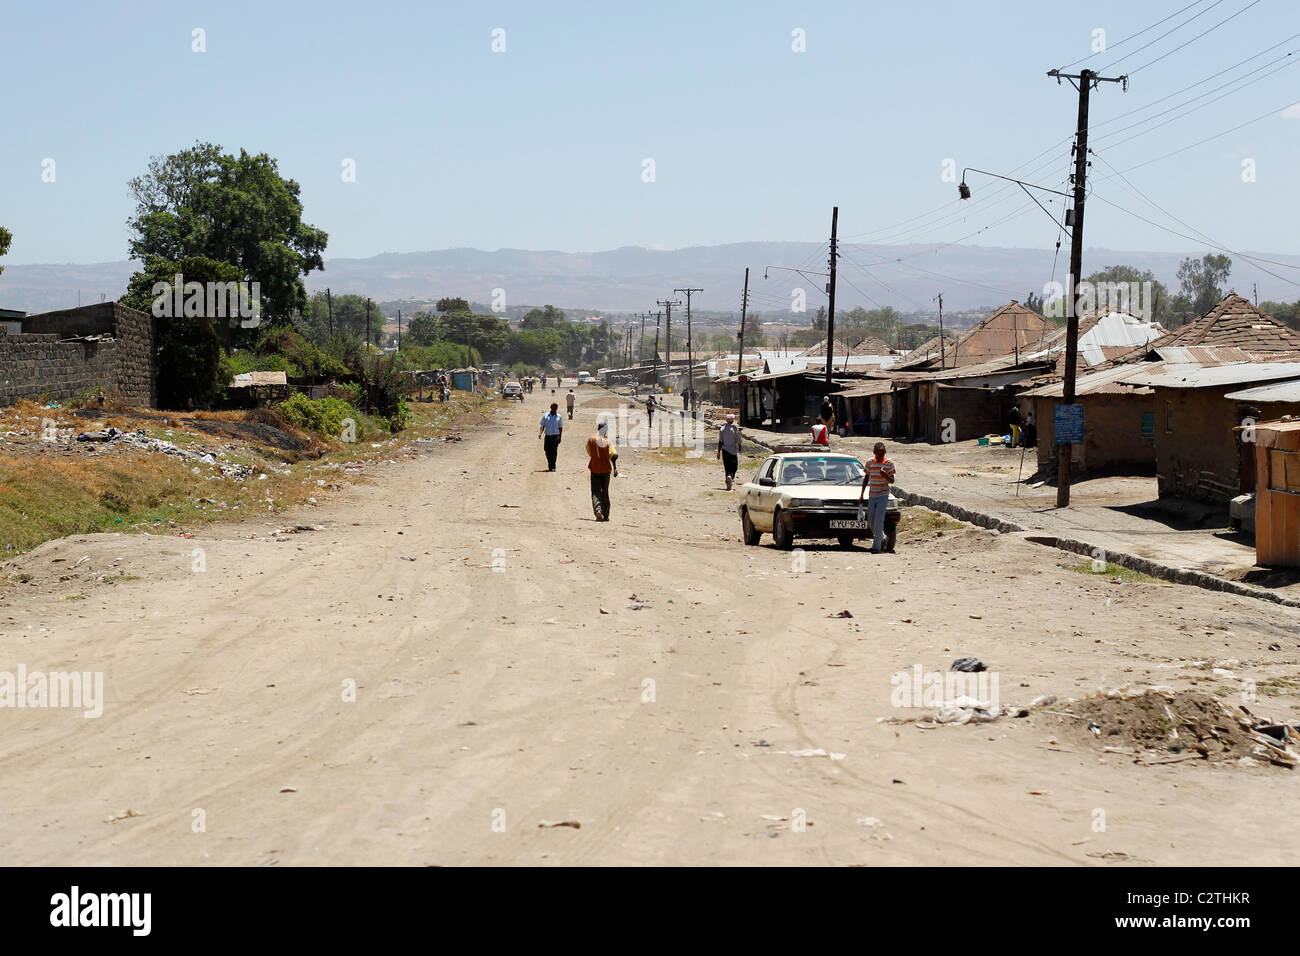 A dusty road in Kenya Stock Photo